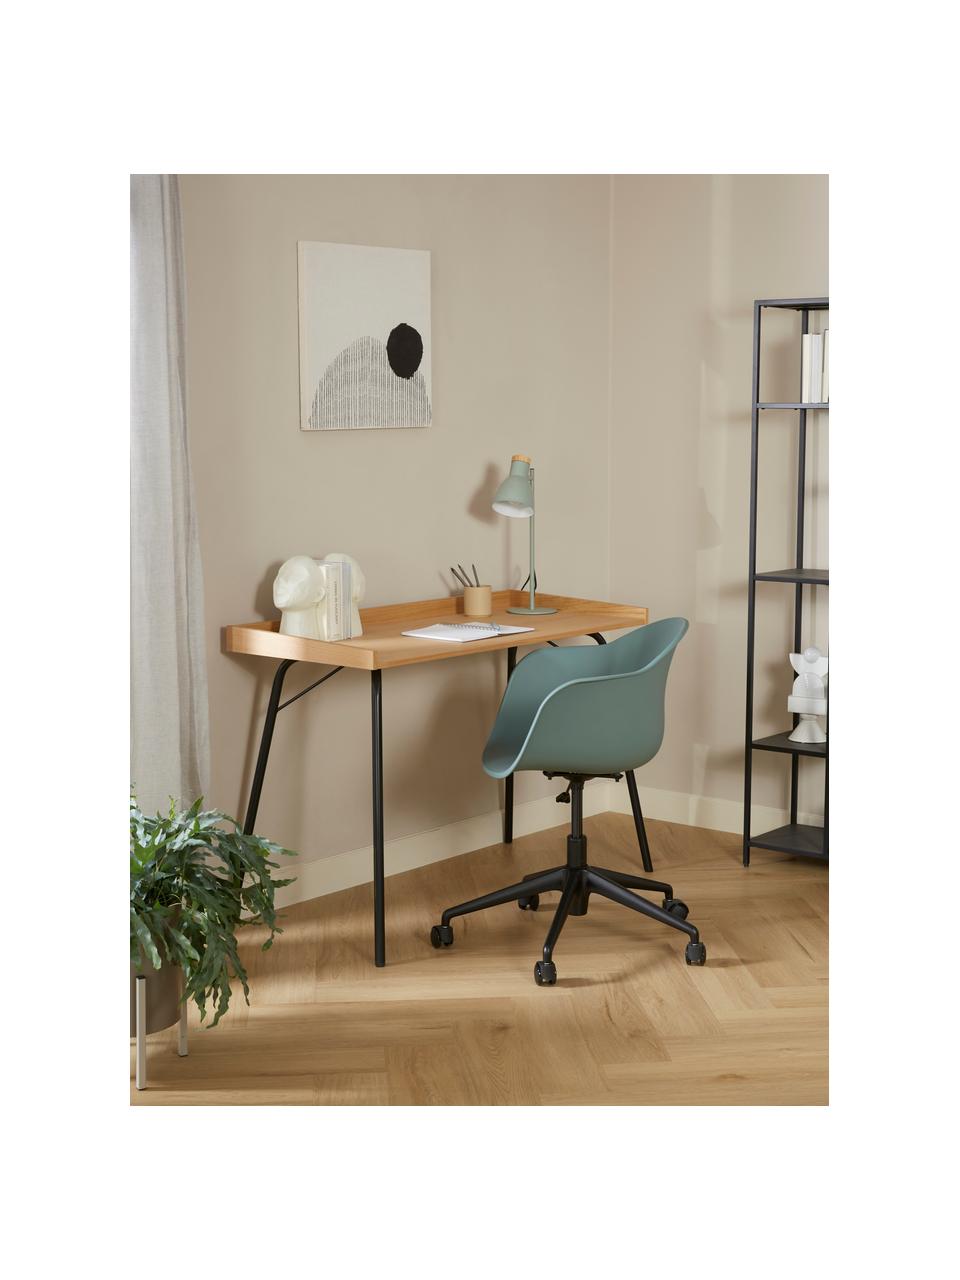 Schreibtischstuhl Claire in Grün, Sitzfläche: 65 % Polypropylen, 35 % G, Beine: Metall, pulverbeschichtet, Rollen: Kunststoff, Grün, B 66 x T 60 cm